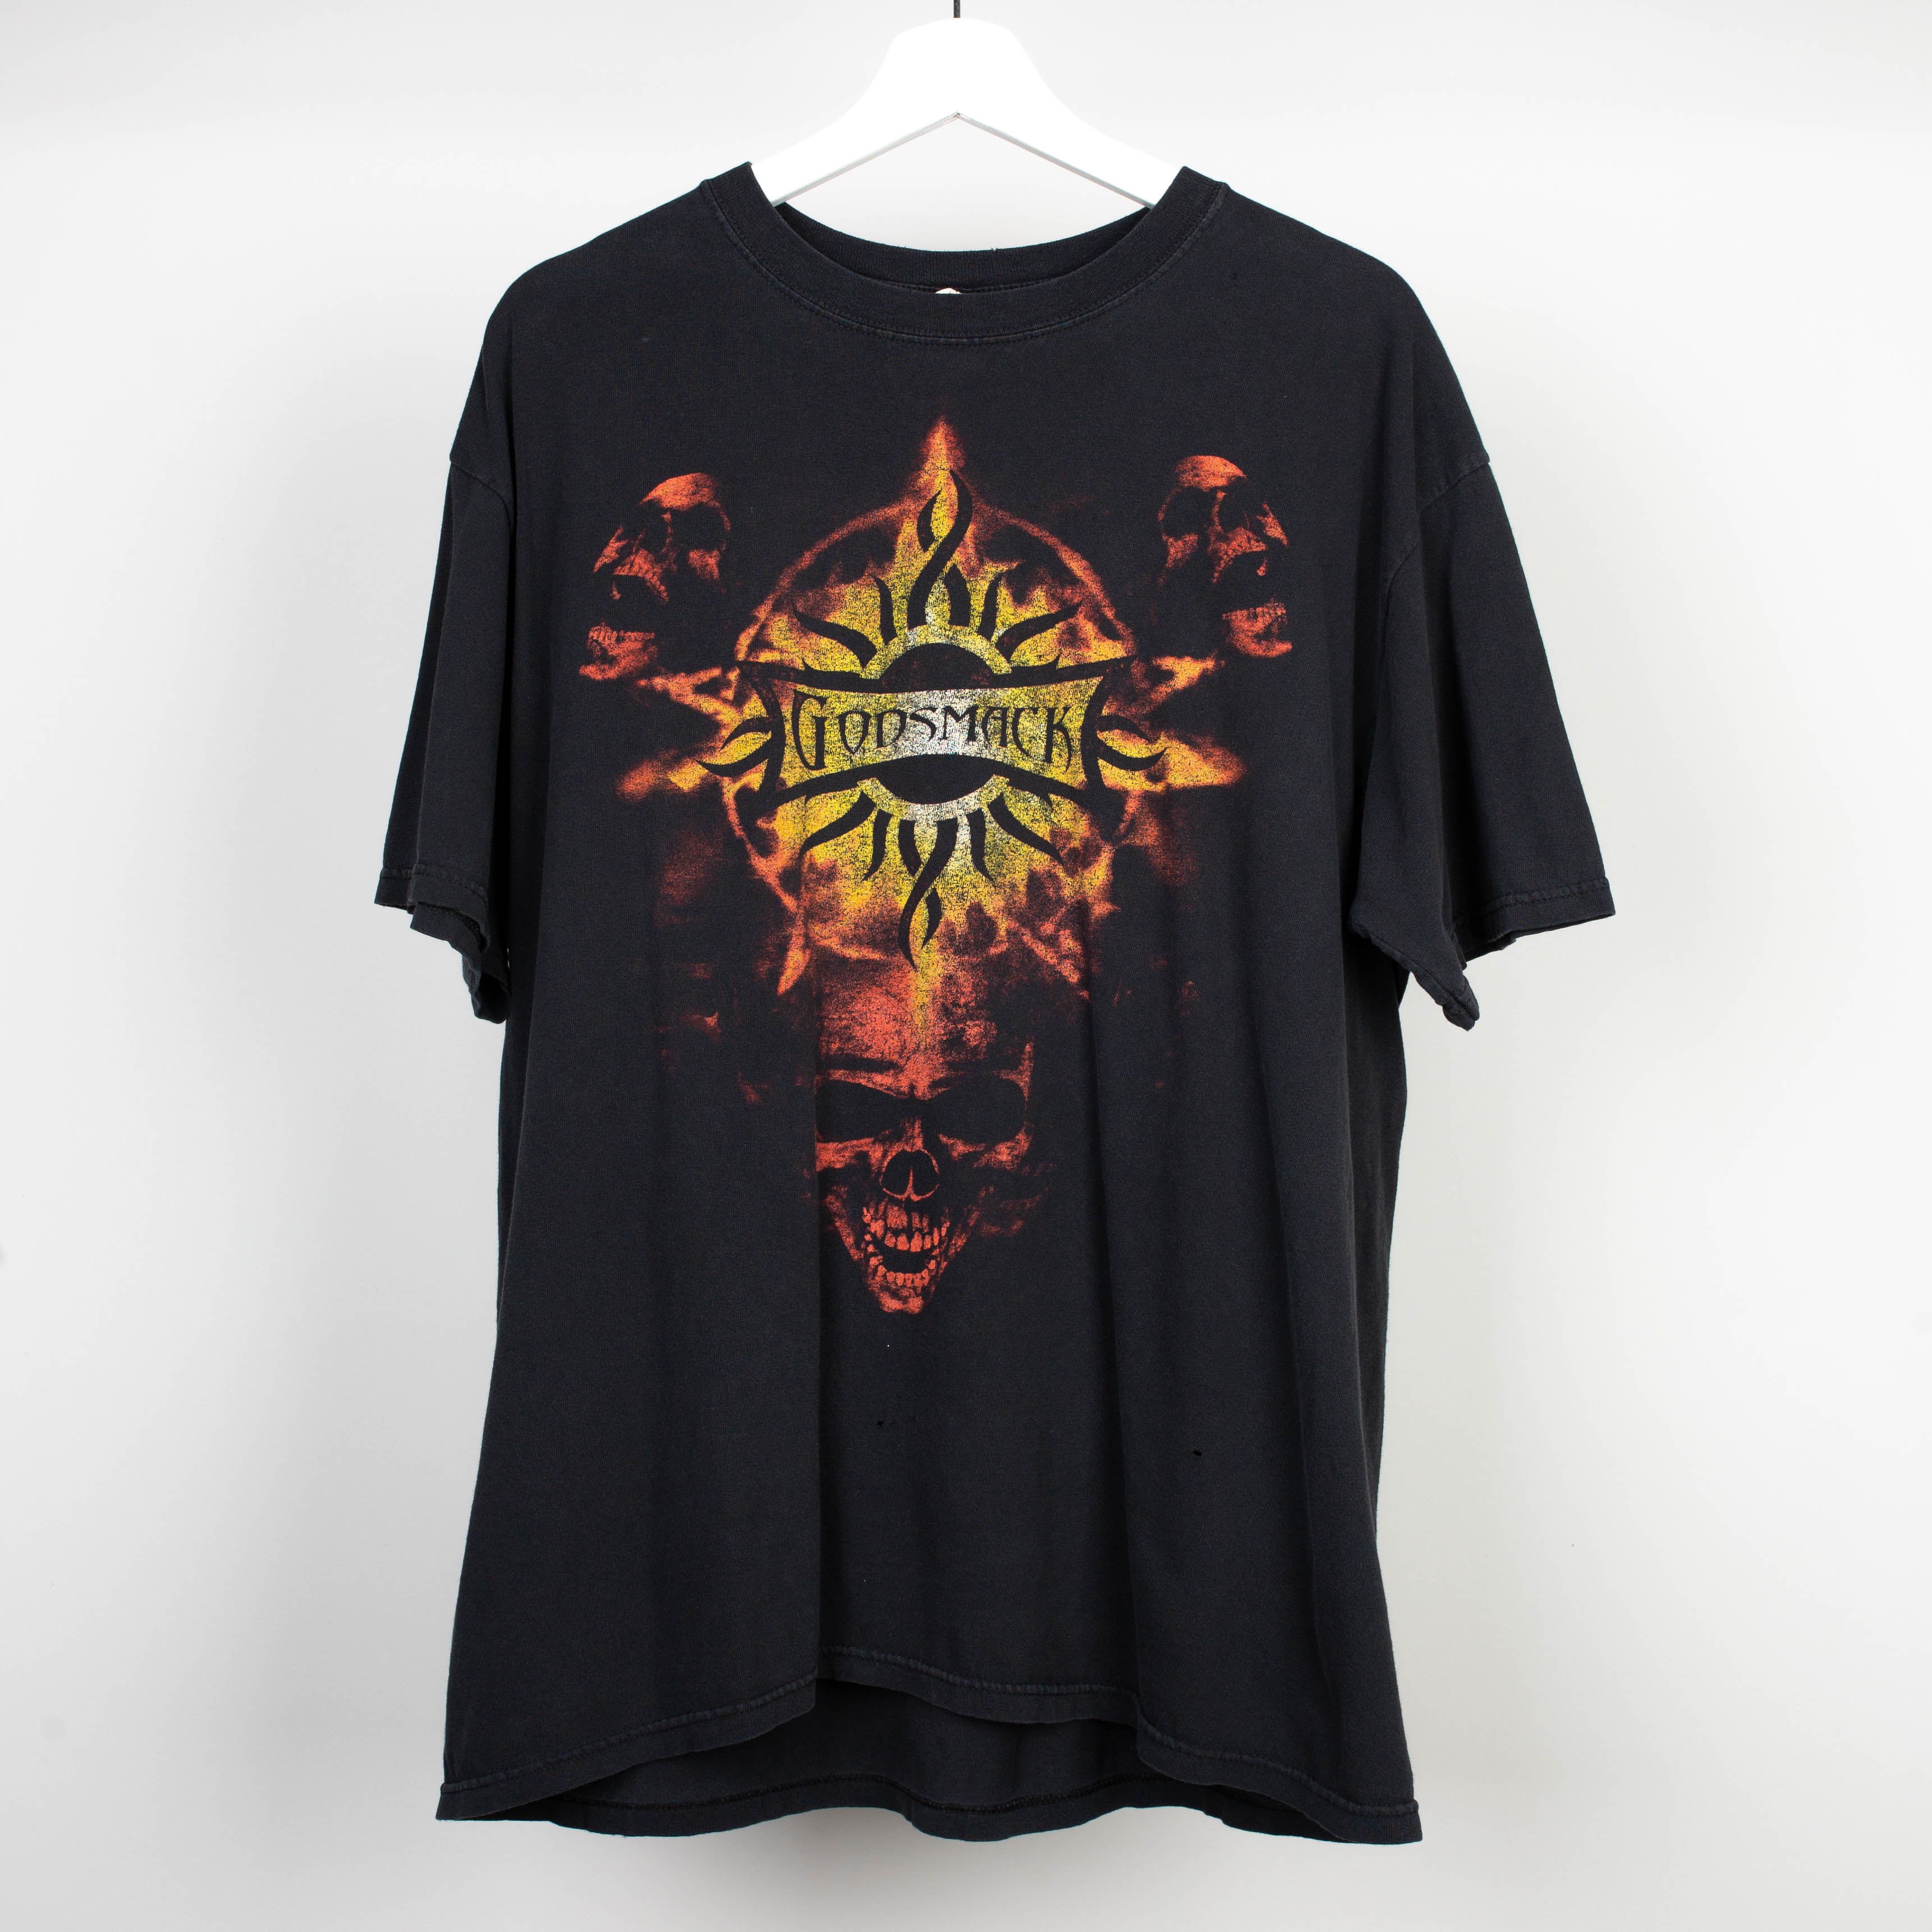 2009 Godsmack Tour T-Shirt Size L